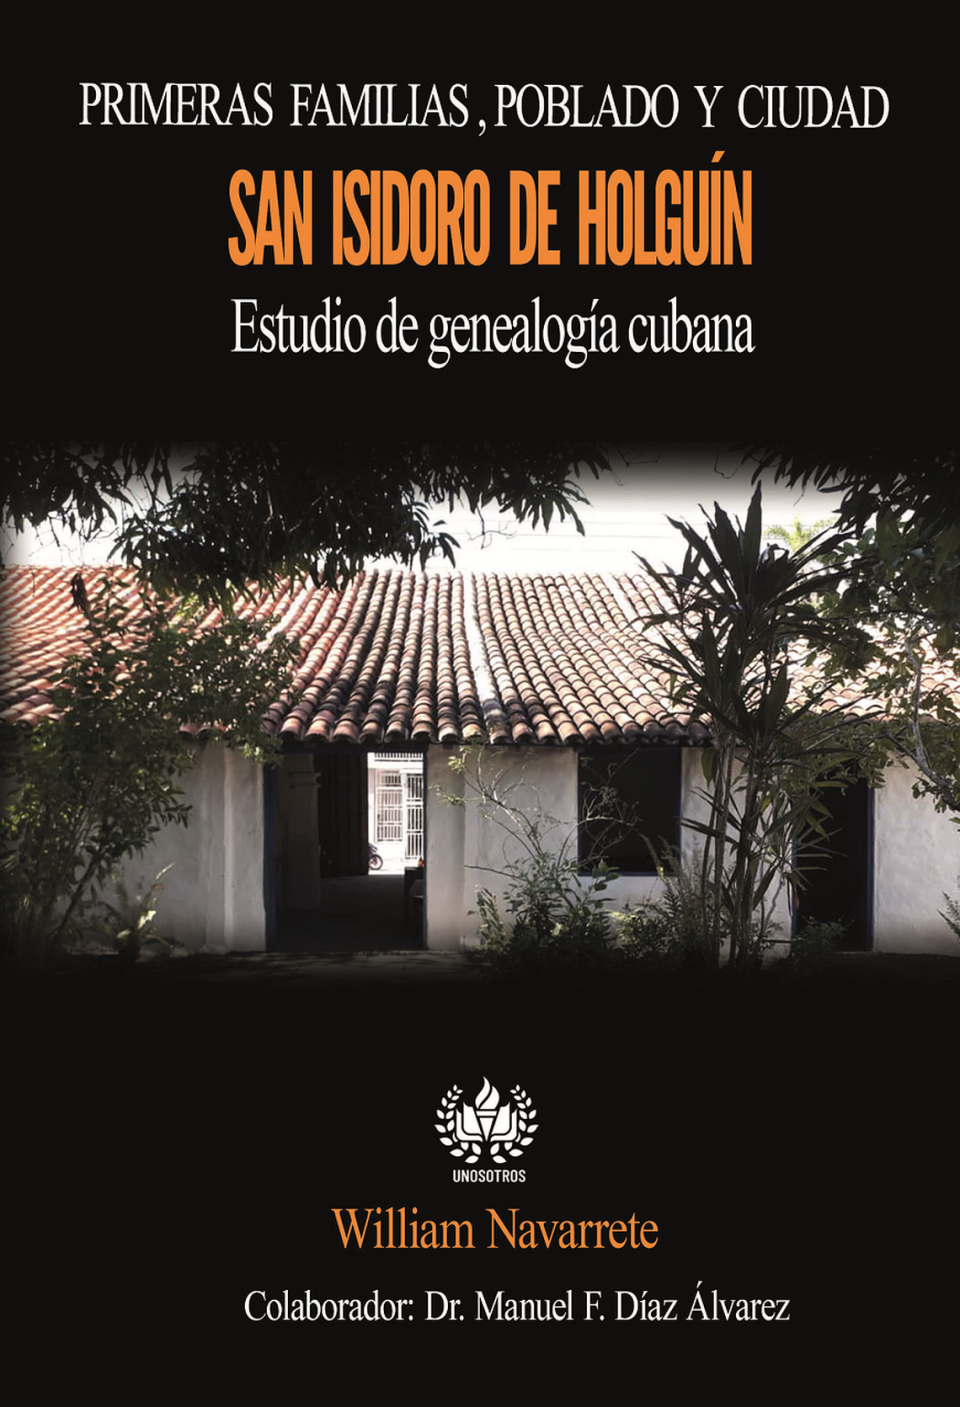 Portada del libro ‘Primeras familias, poblado y ciudad San Isidoro de Holguín’ de William Navarrete.